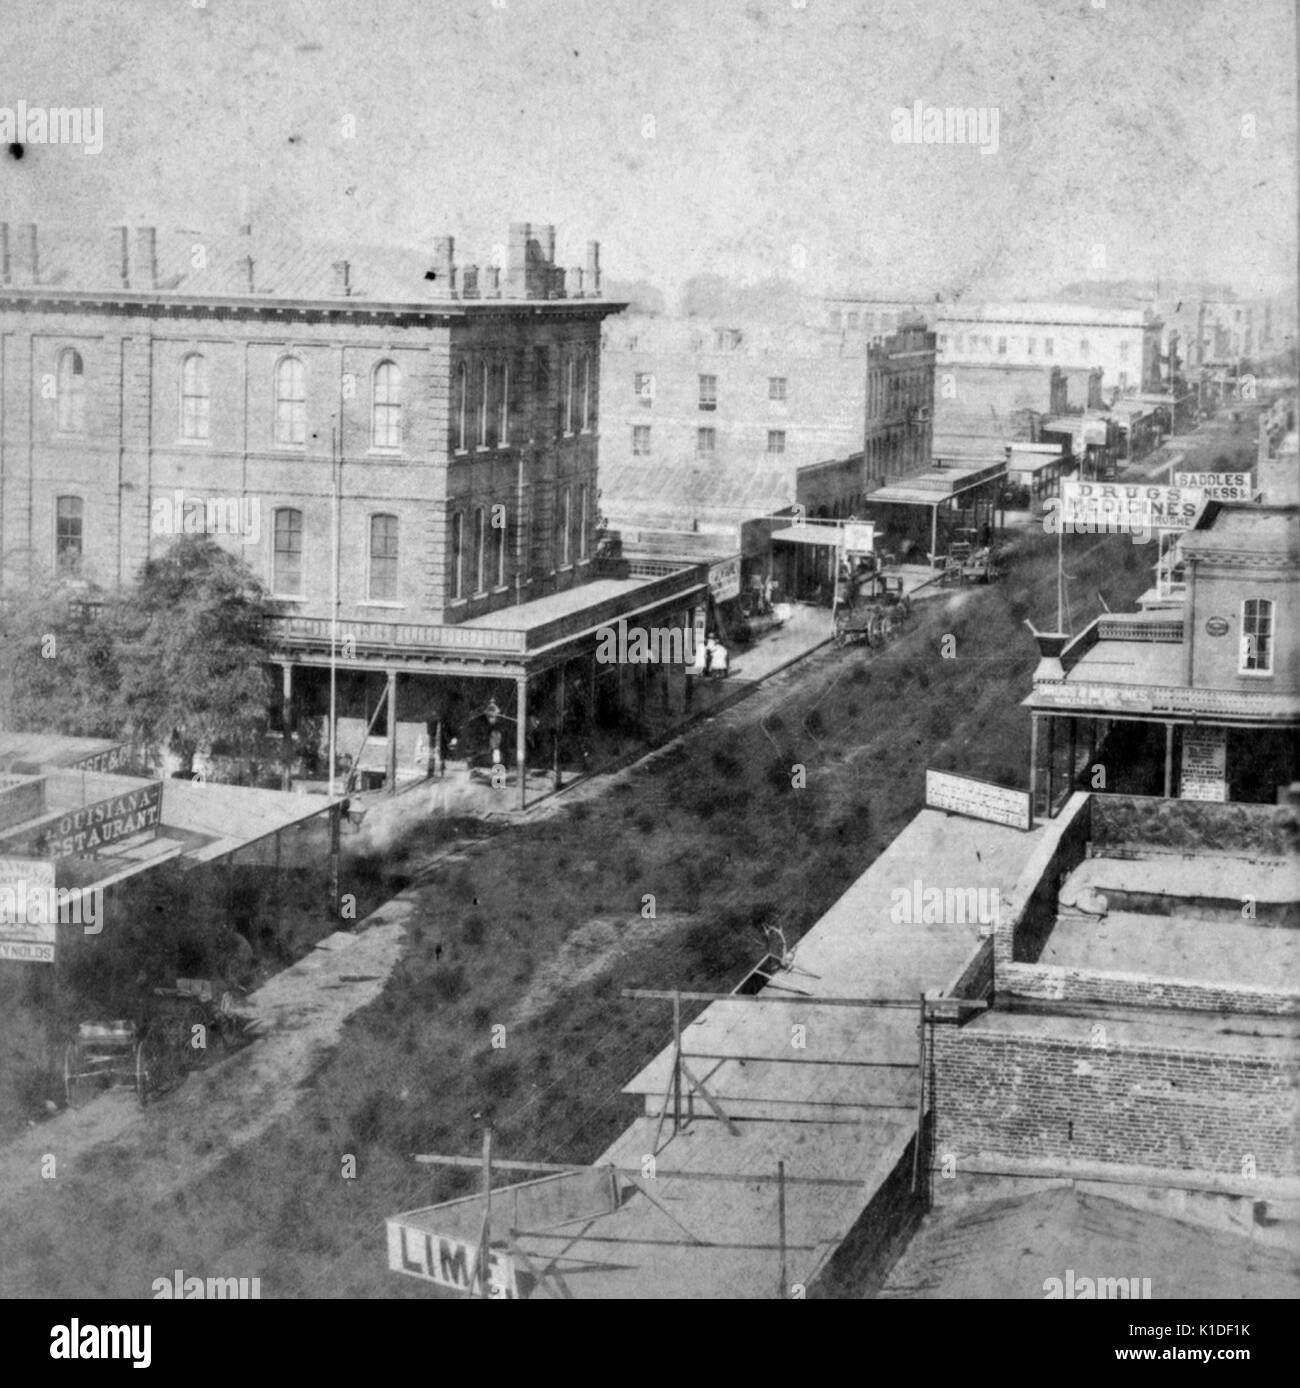 Una fotografia della massoneria hall, presi da un tetto, solo carri sono visibili sul prevalentemente strade sterile, Sacramento, California, 1880. dalla biblioteca pubblica di new york. Foto Stock